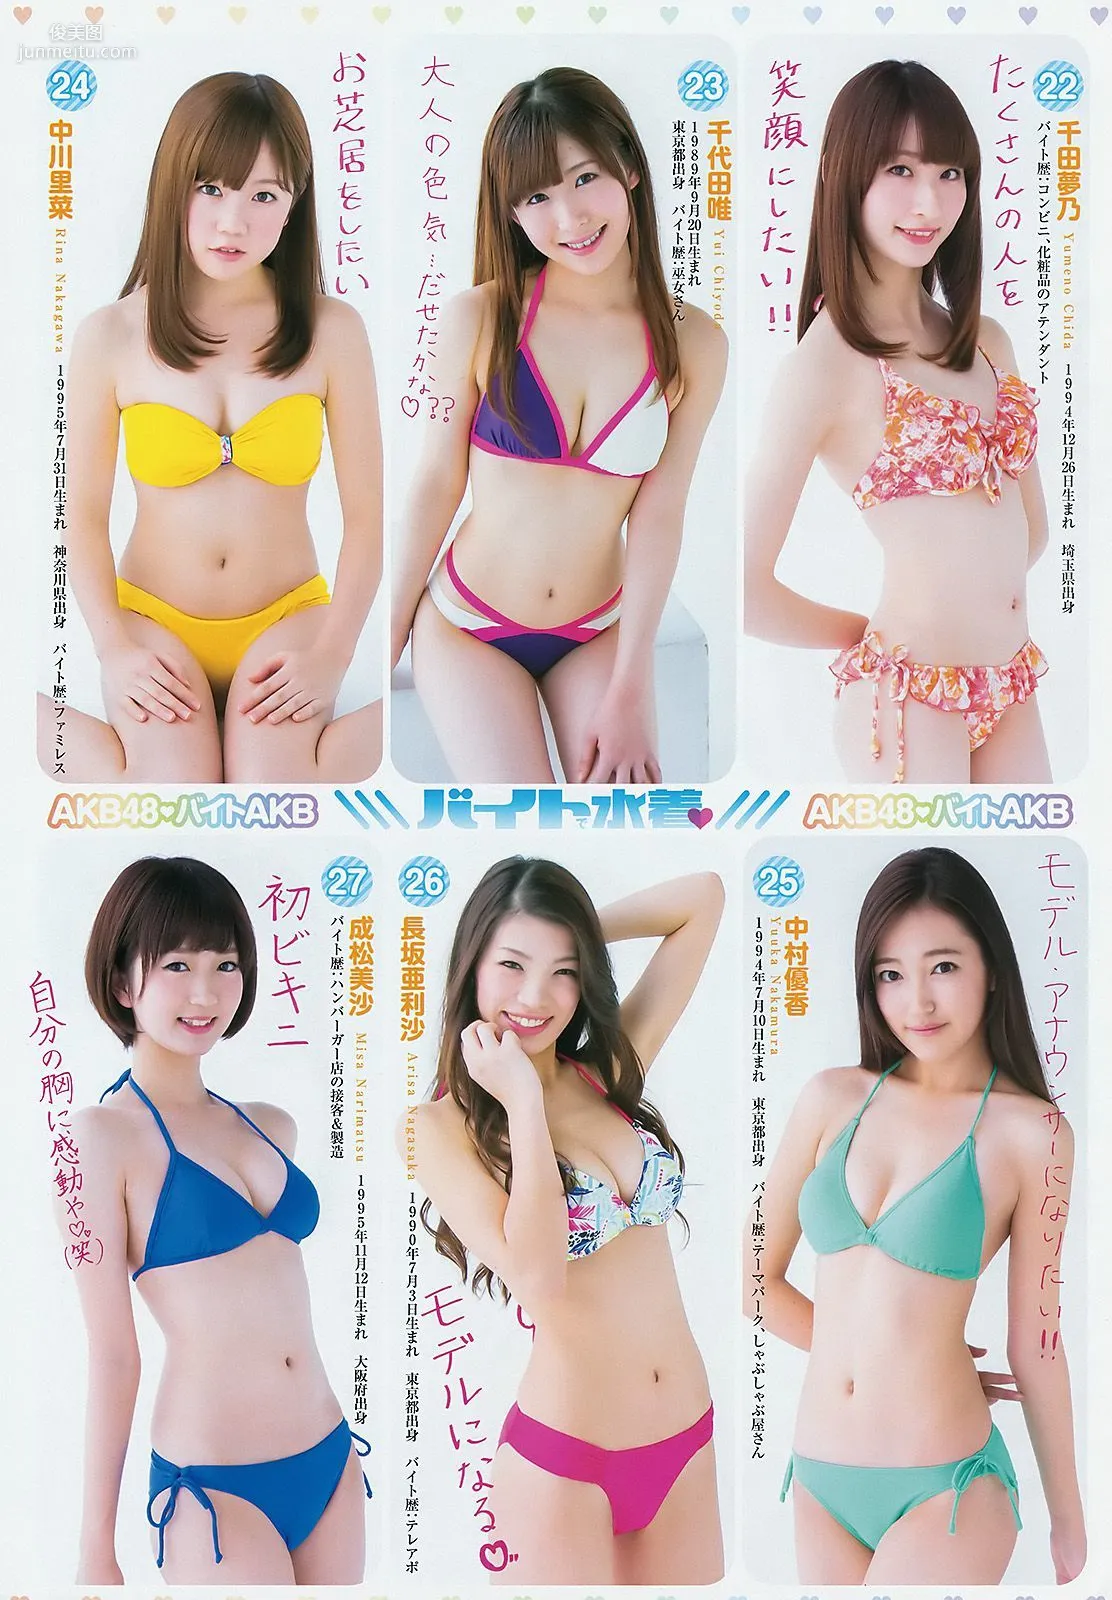 小瀨田麻由 飯豊まりえ バイトAKB [Weekly Young Jump] 2015年No.03 写真杂志6